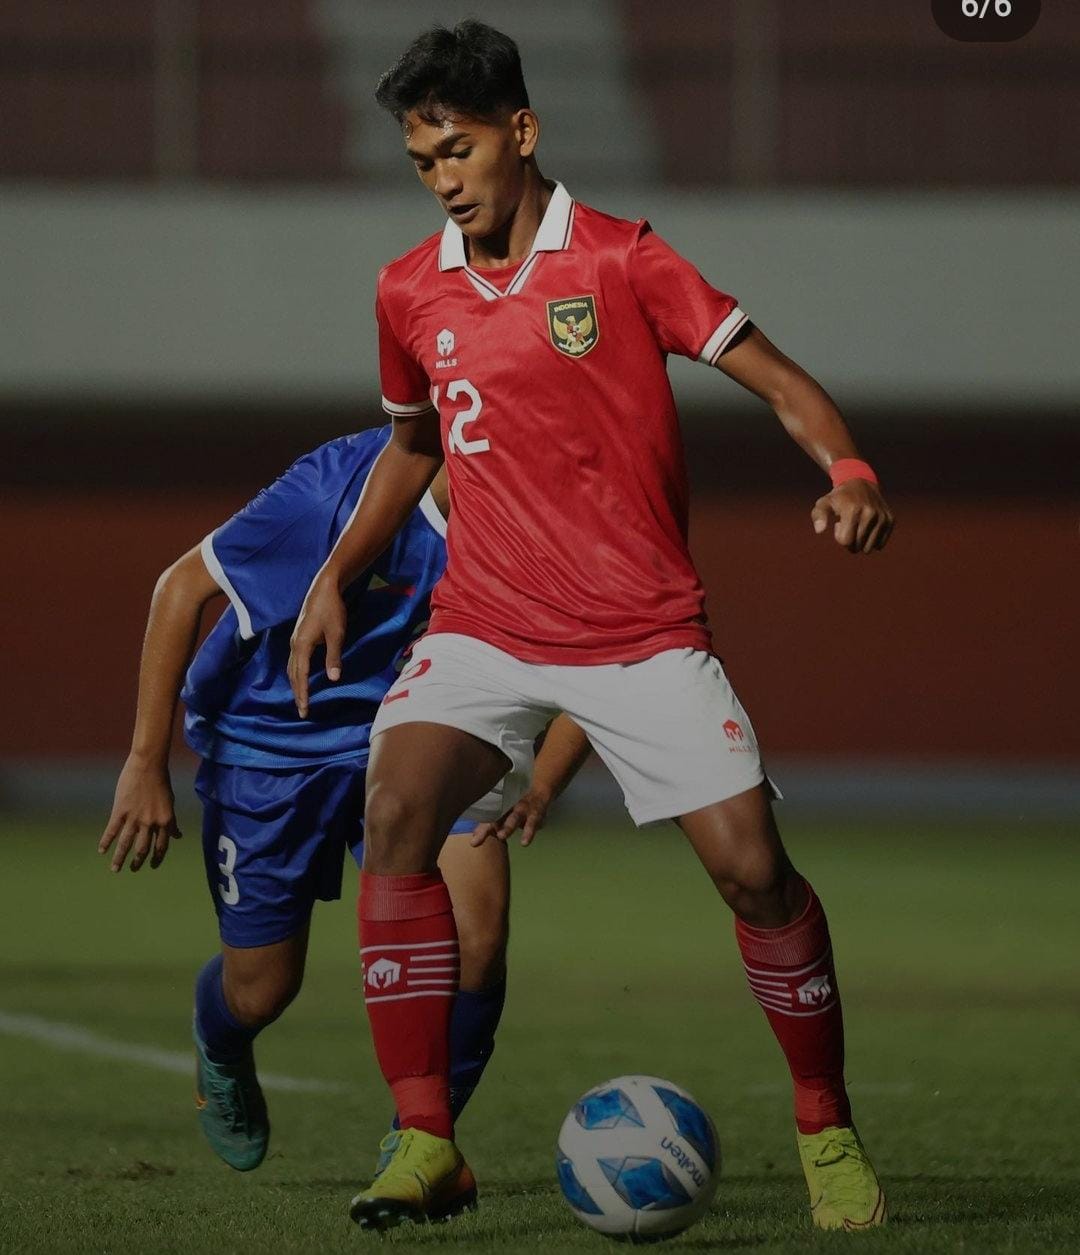 Timnas U-16 Indonesia